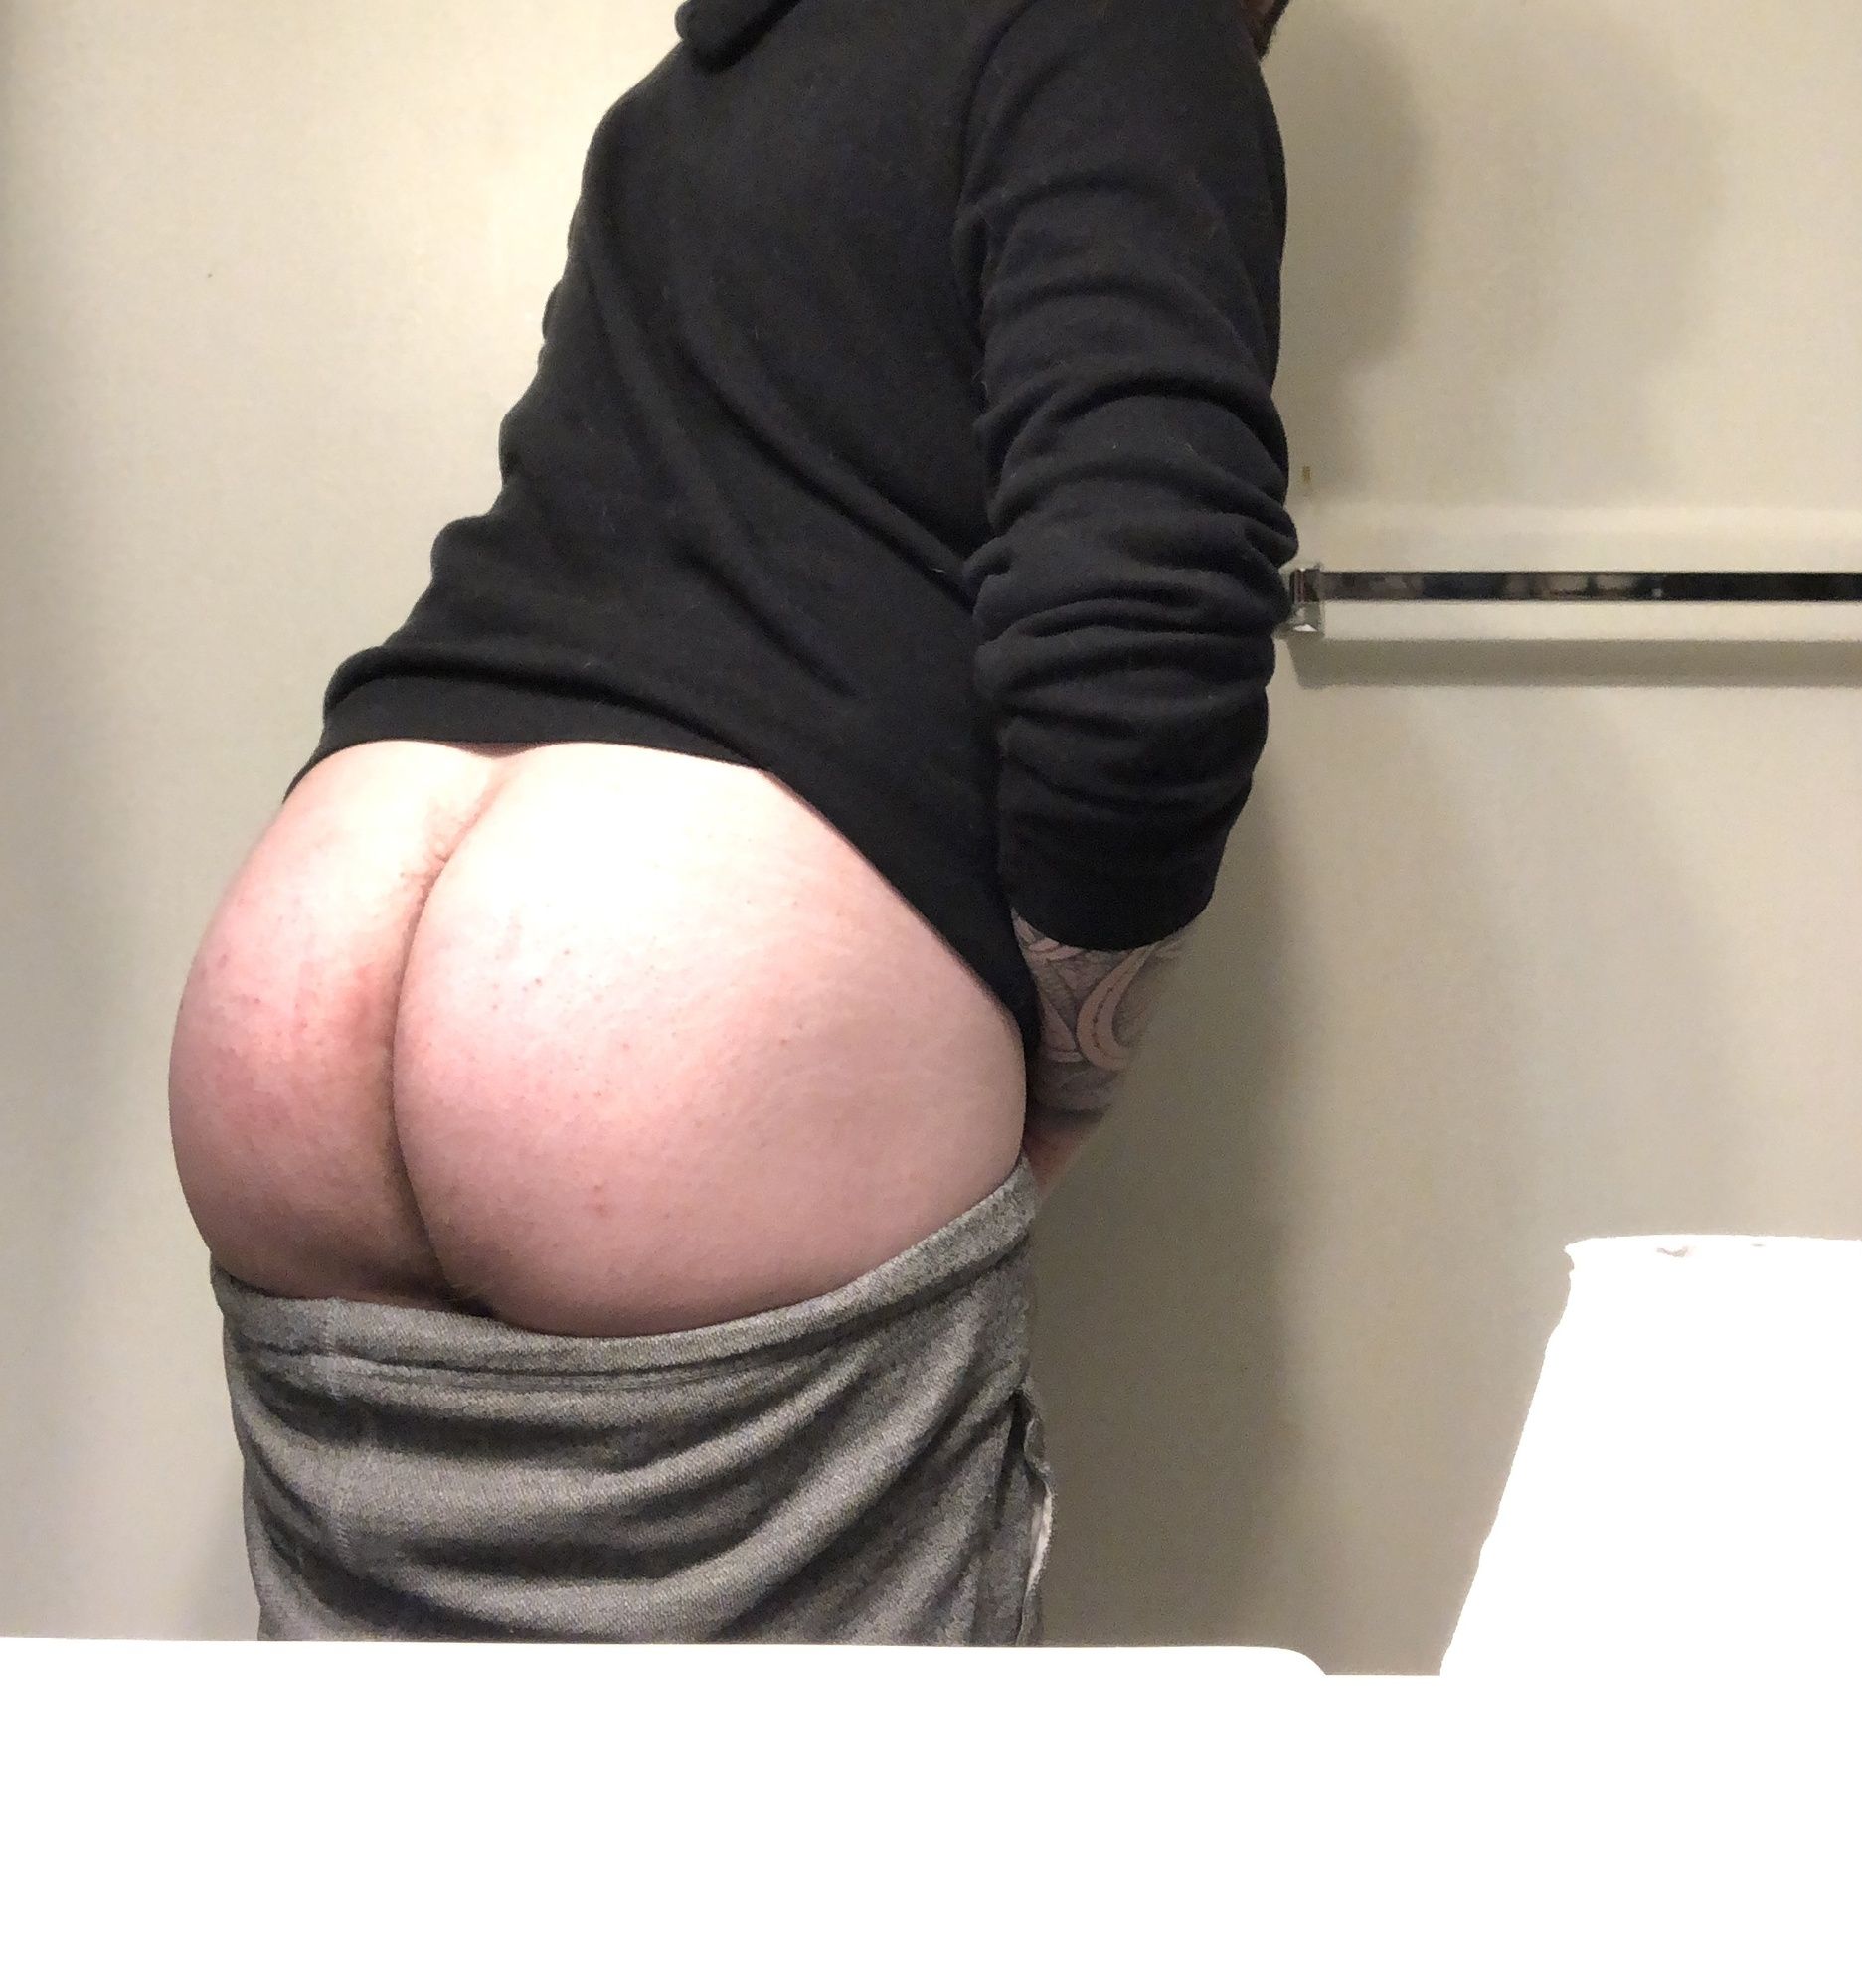 Ass Pics #6